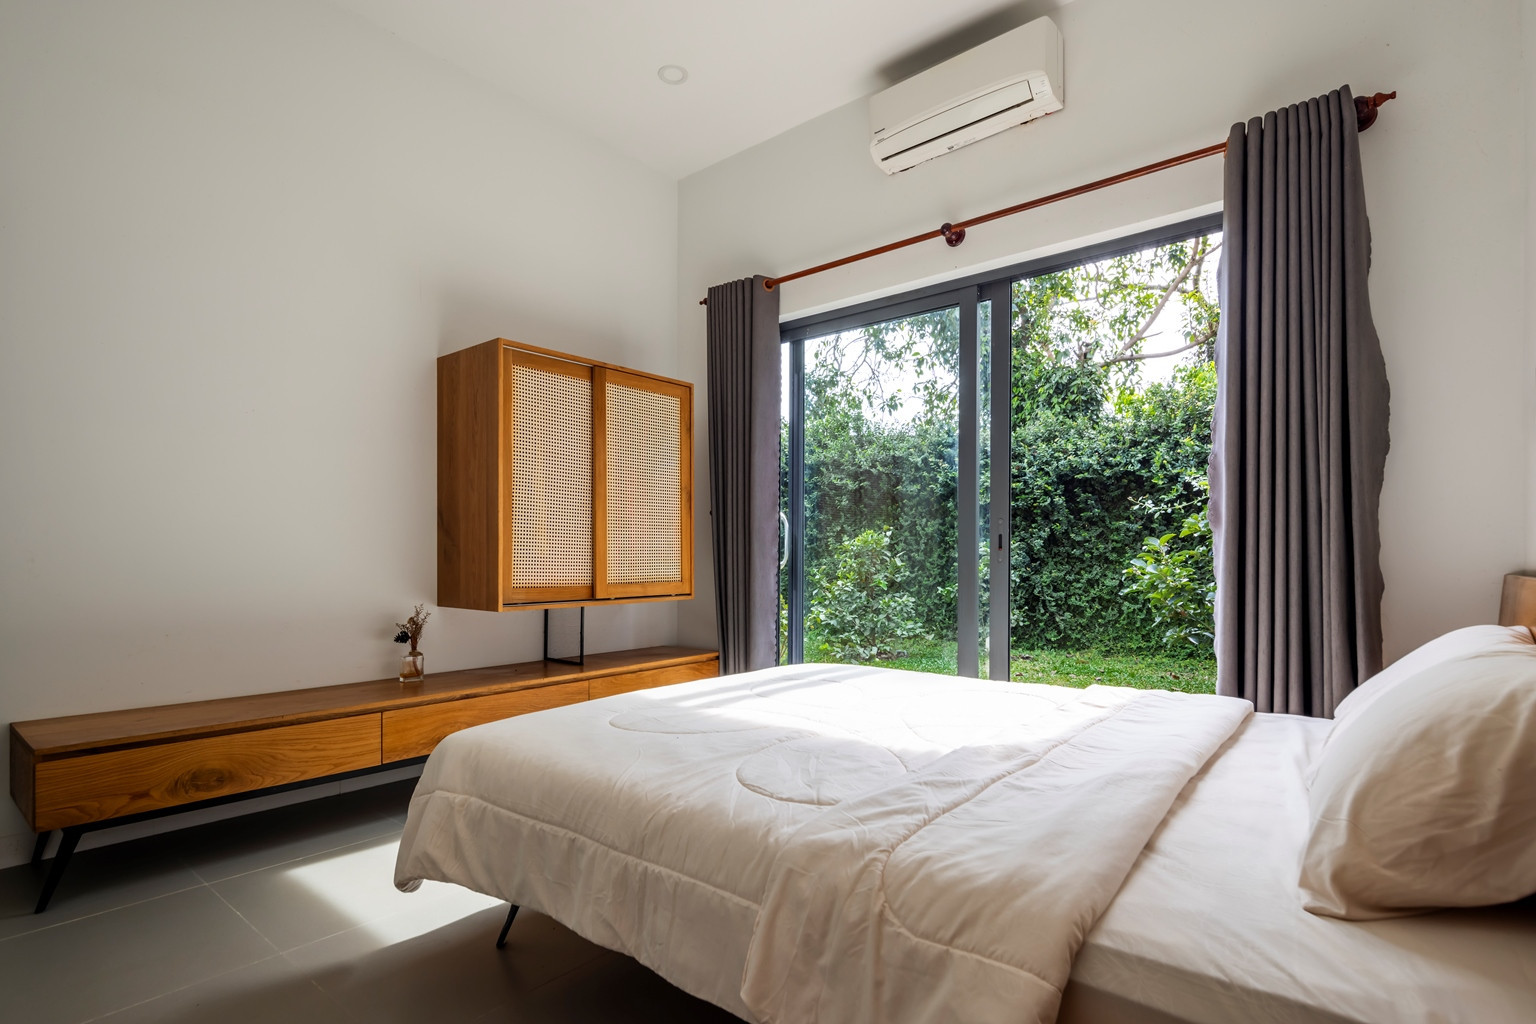 Phòng ngủ cũng được thiết kế cửa kính nhằm kết nối với không gian xanh bên ngoài.